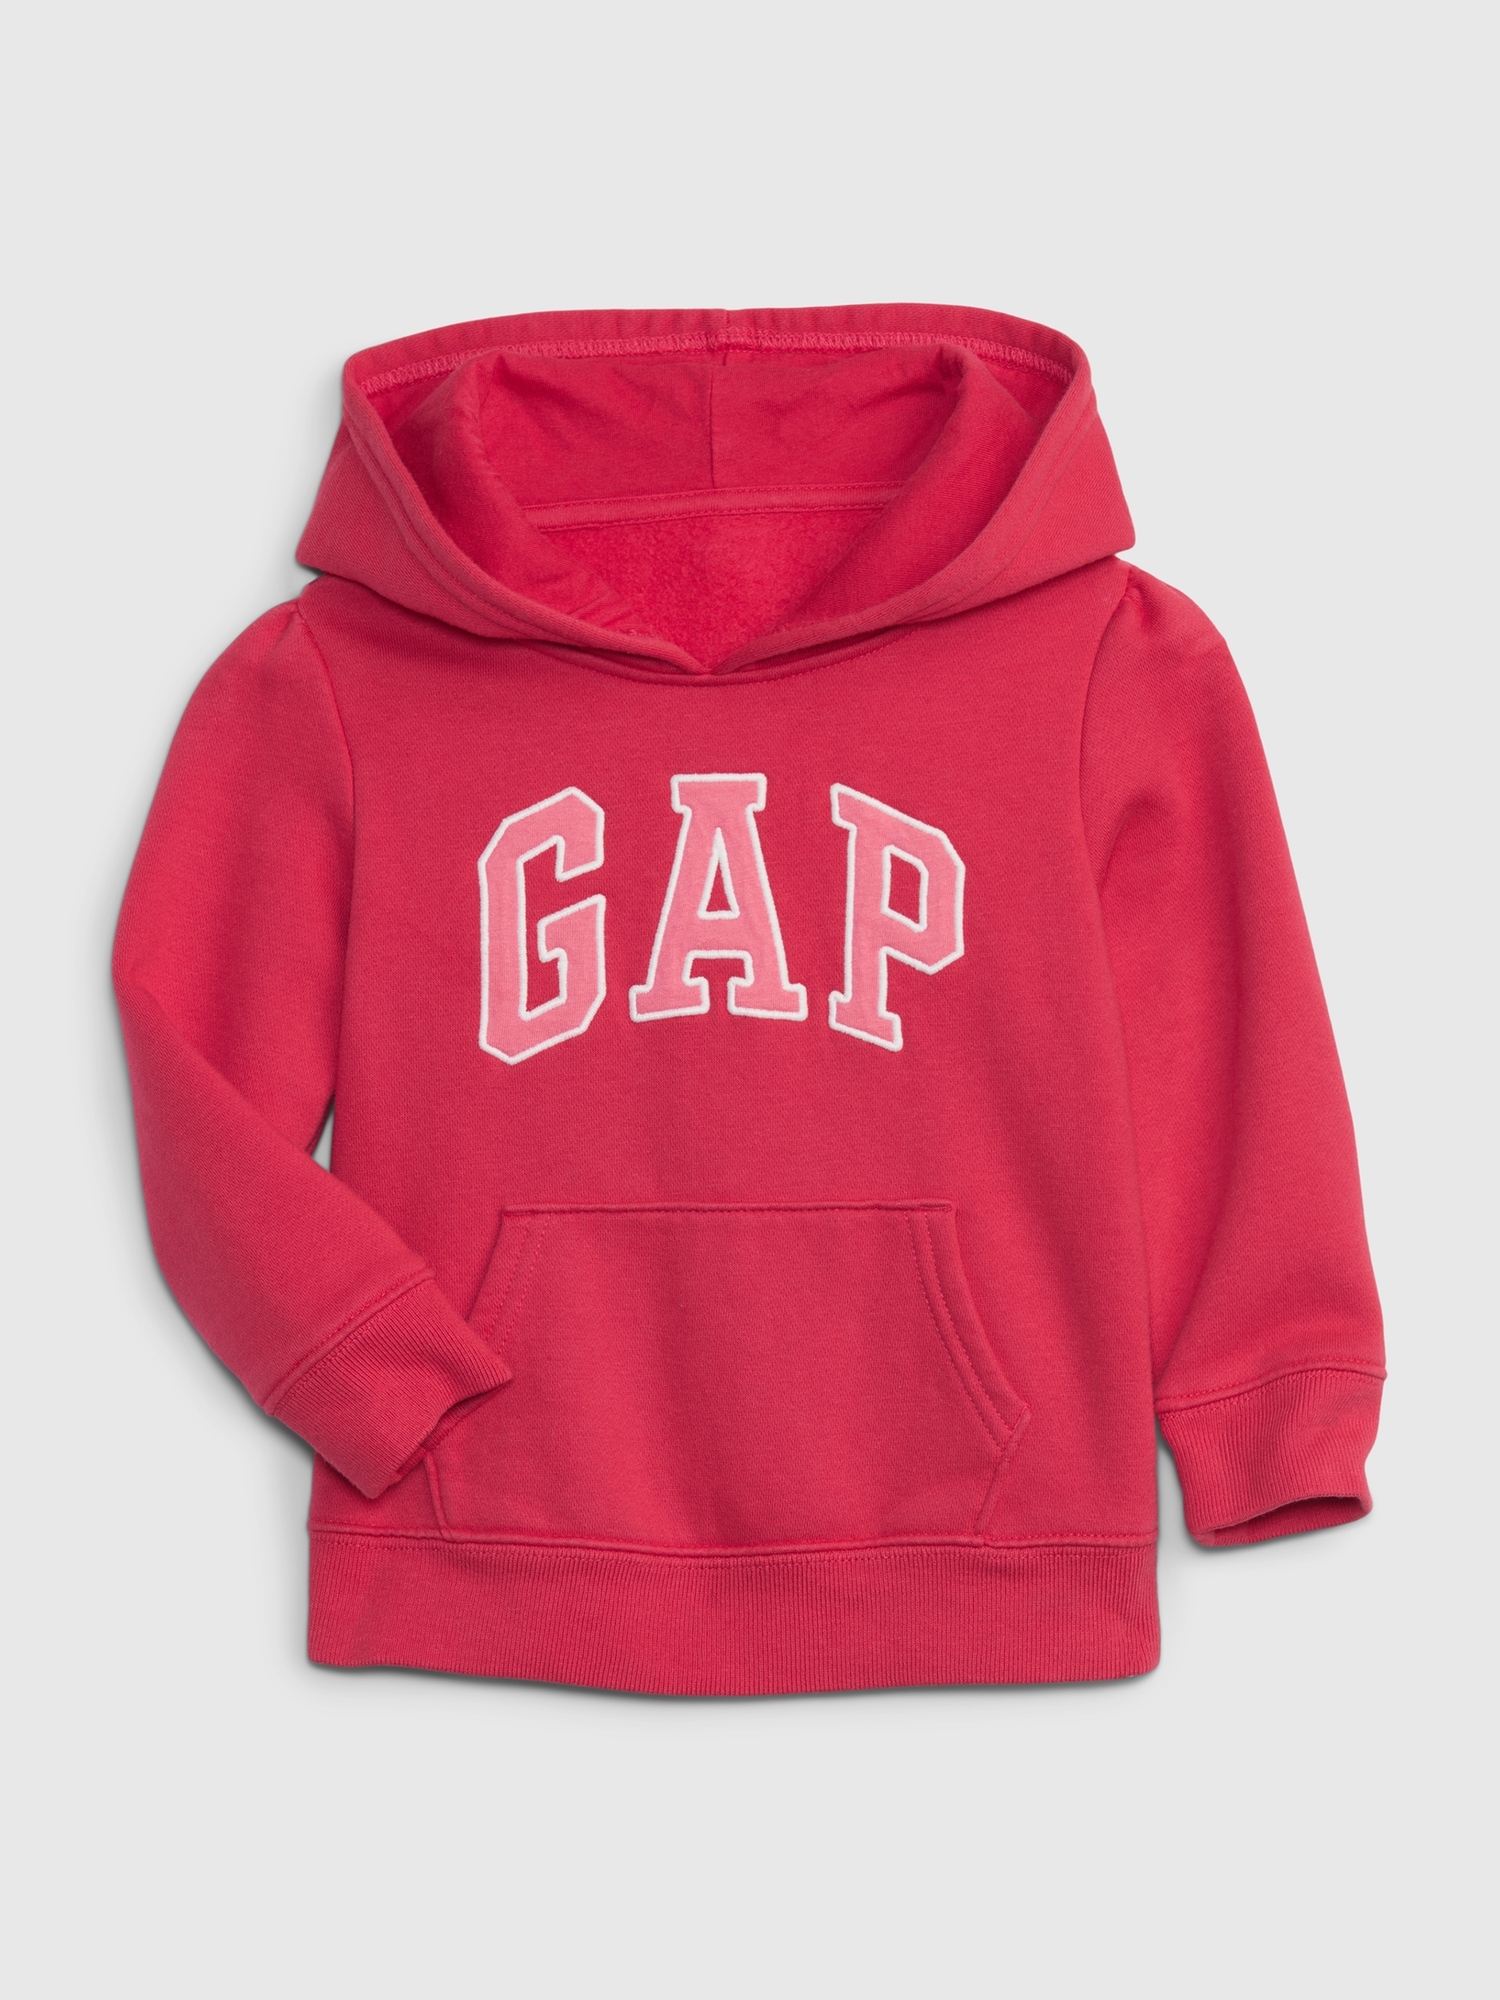 Gap Toddler Arch Logo Hoodie